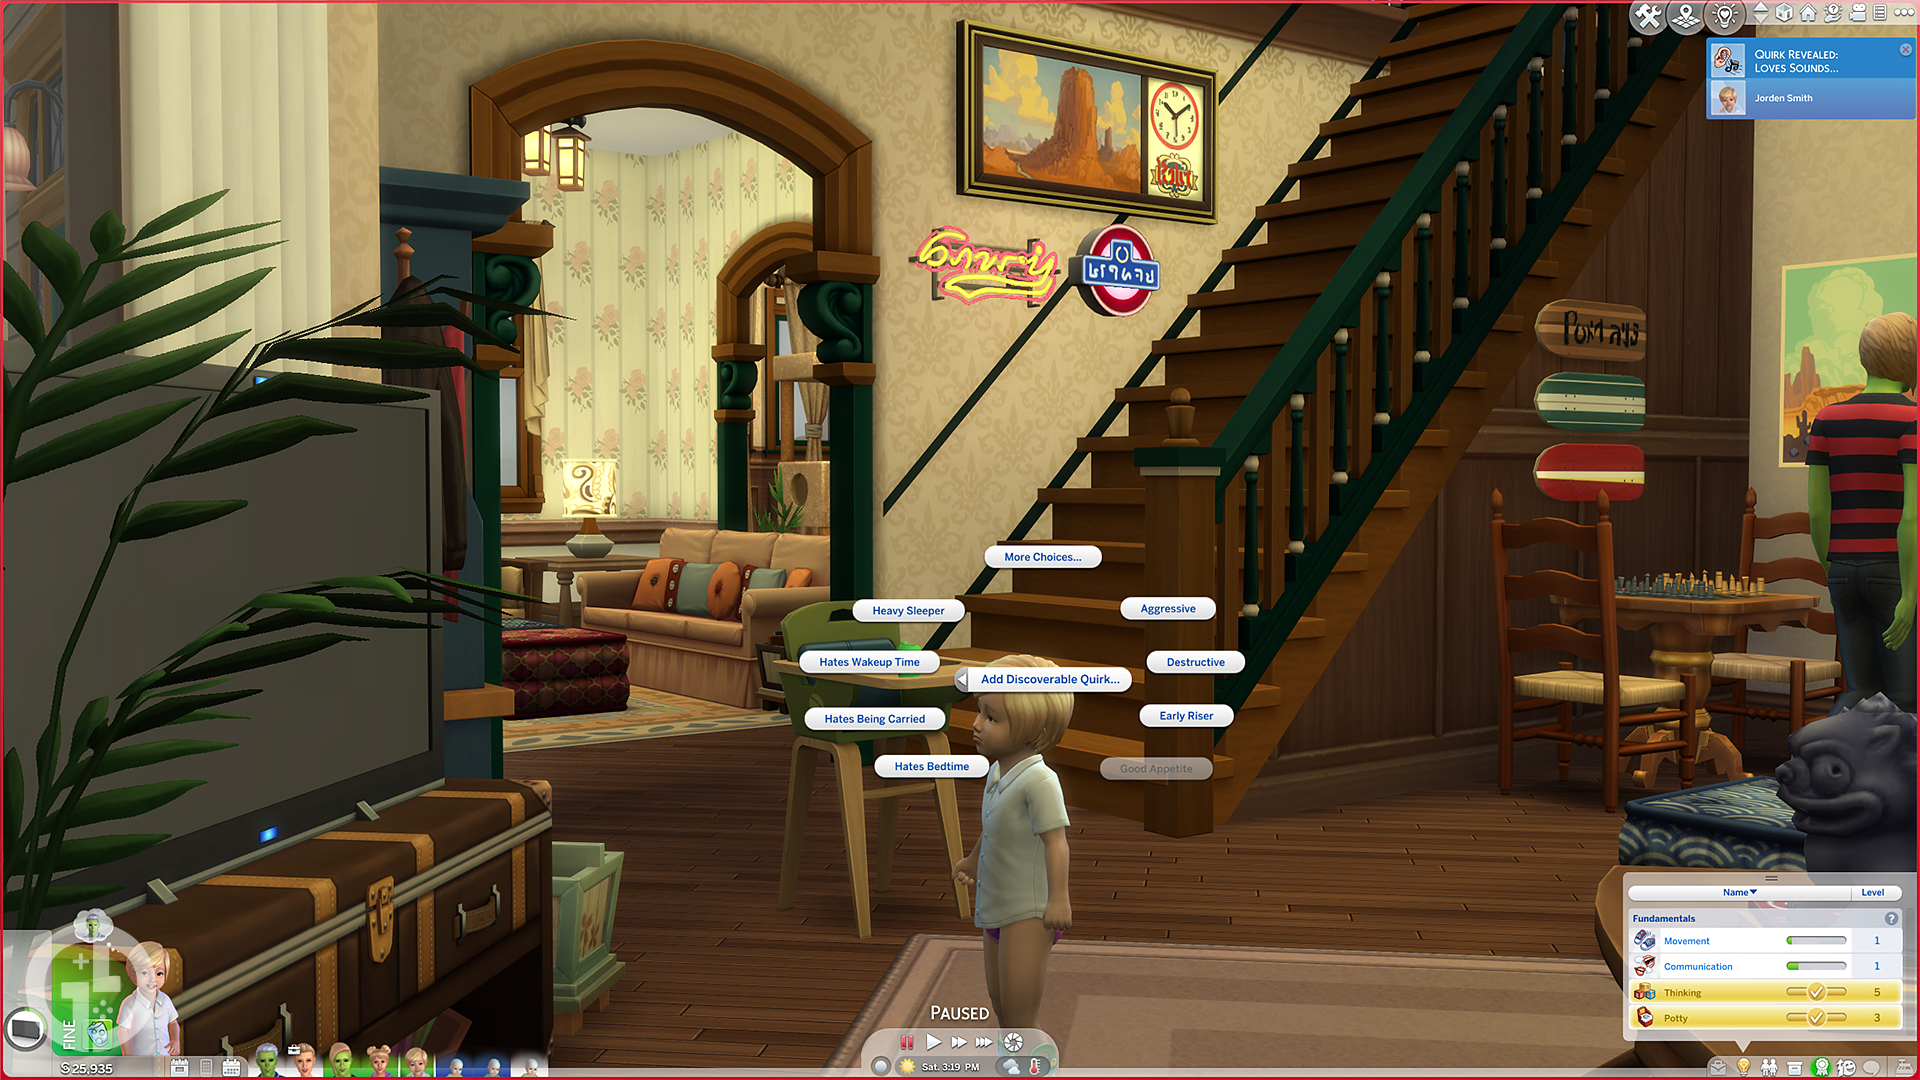 Читы The Sims 4 Toddler для улучшения навыков, черт характера, потребностей и многого другого